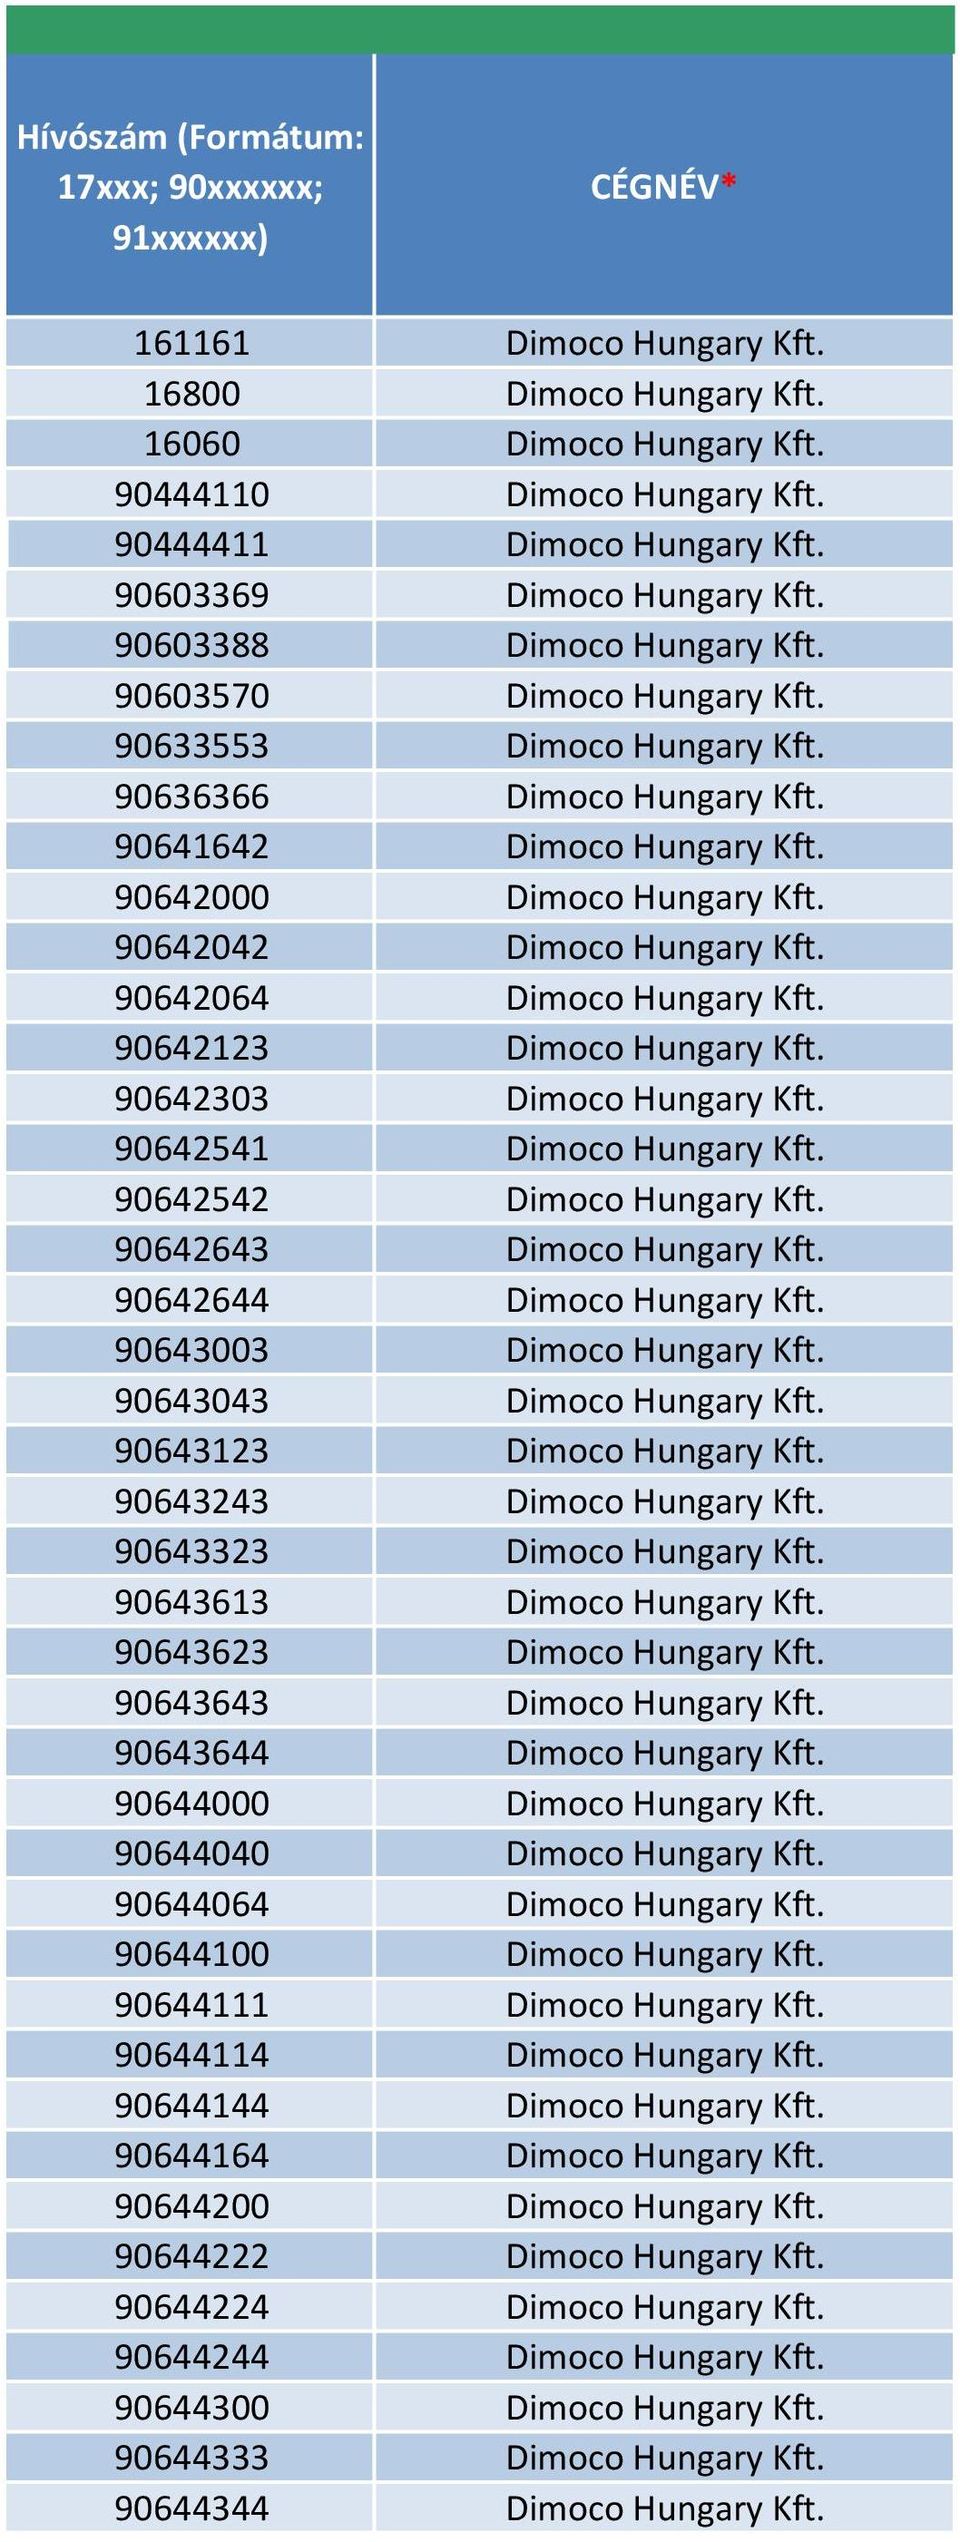 90642000 Dimoco Hungary Kft. 90642042 Dimoco Hungary Kft. 90642064 Dimoco Hungary Kft. 90642123 Dimoco Hungary Kft. 90642303 Dimoco Hungary Kft. 90642541 Dimoco Hungary Kft.